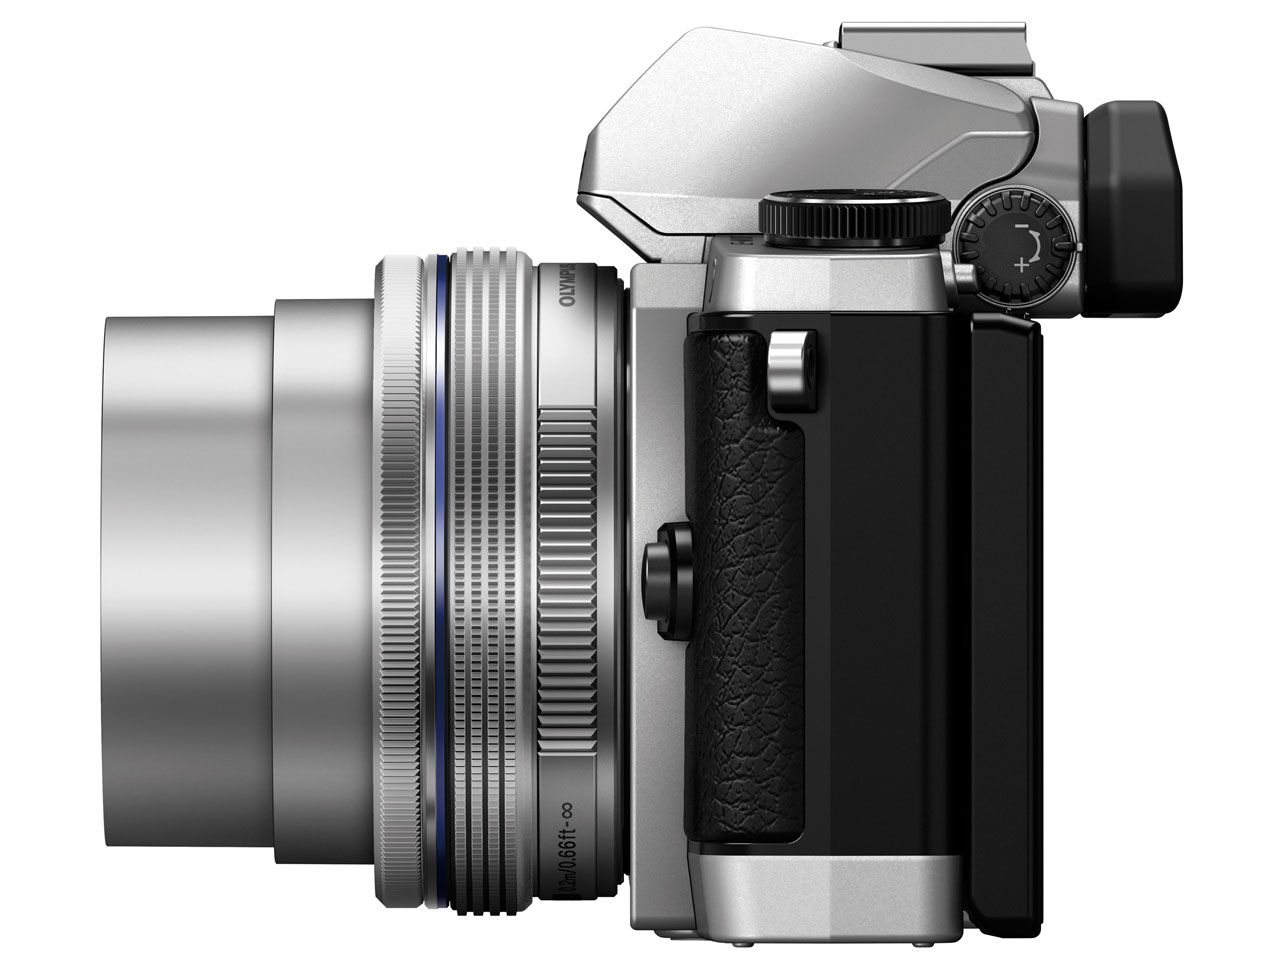 価格.com - 『本体 右側面2』 OLYMPUS OM-D E-M10 14-42mm EZ レンズキット [シルバー] の製品画像